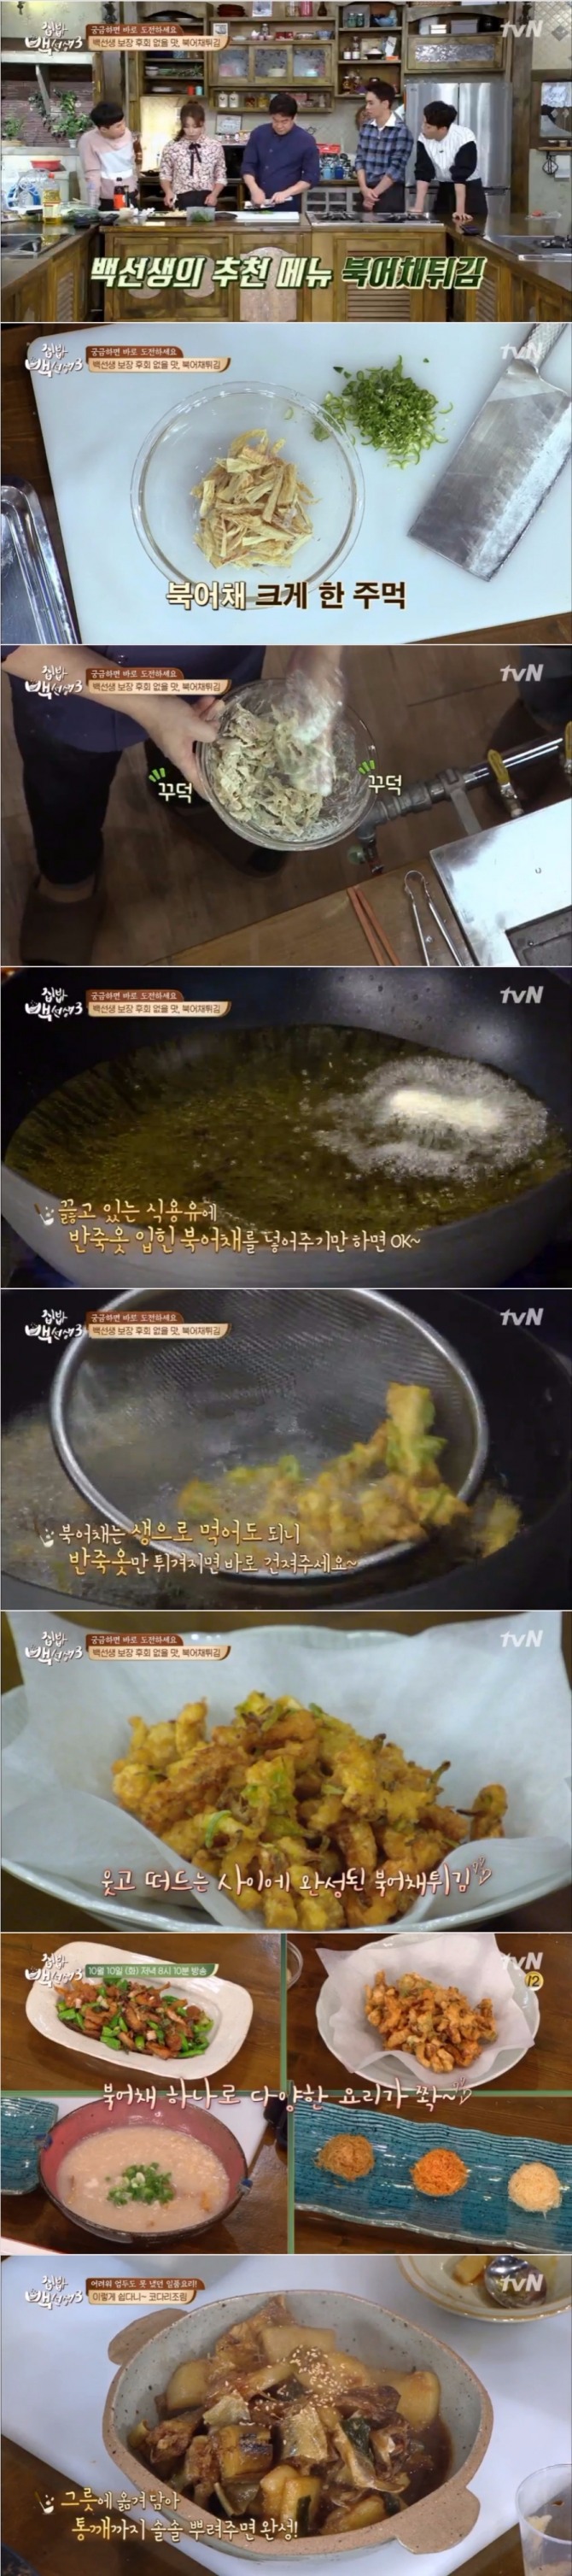 10일 밤 방송된 tvN '집밥 백선생3'에서는 백종원이 북어채를 이용한 백선생부겅채튀김, 백선생북어채볶음, 북어채누룽지탕, 삼색포푸라기, 코다리조림 등을 선보였다. 사진=tvN 방송 캡처